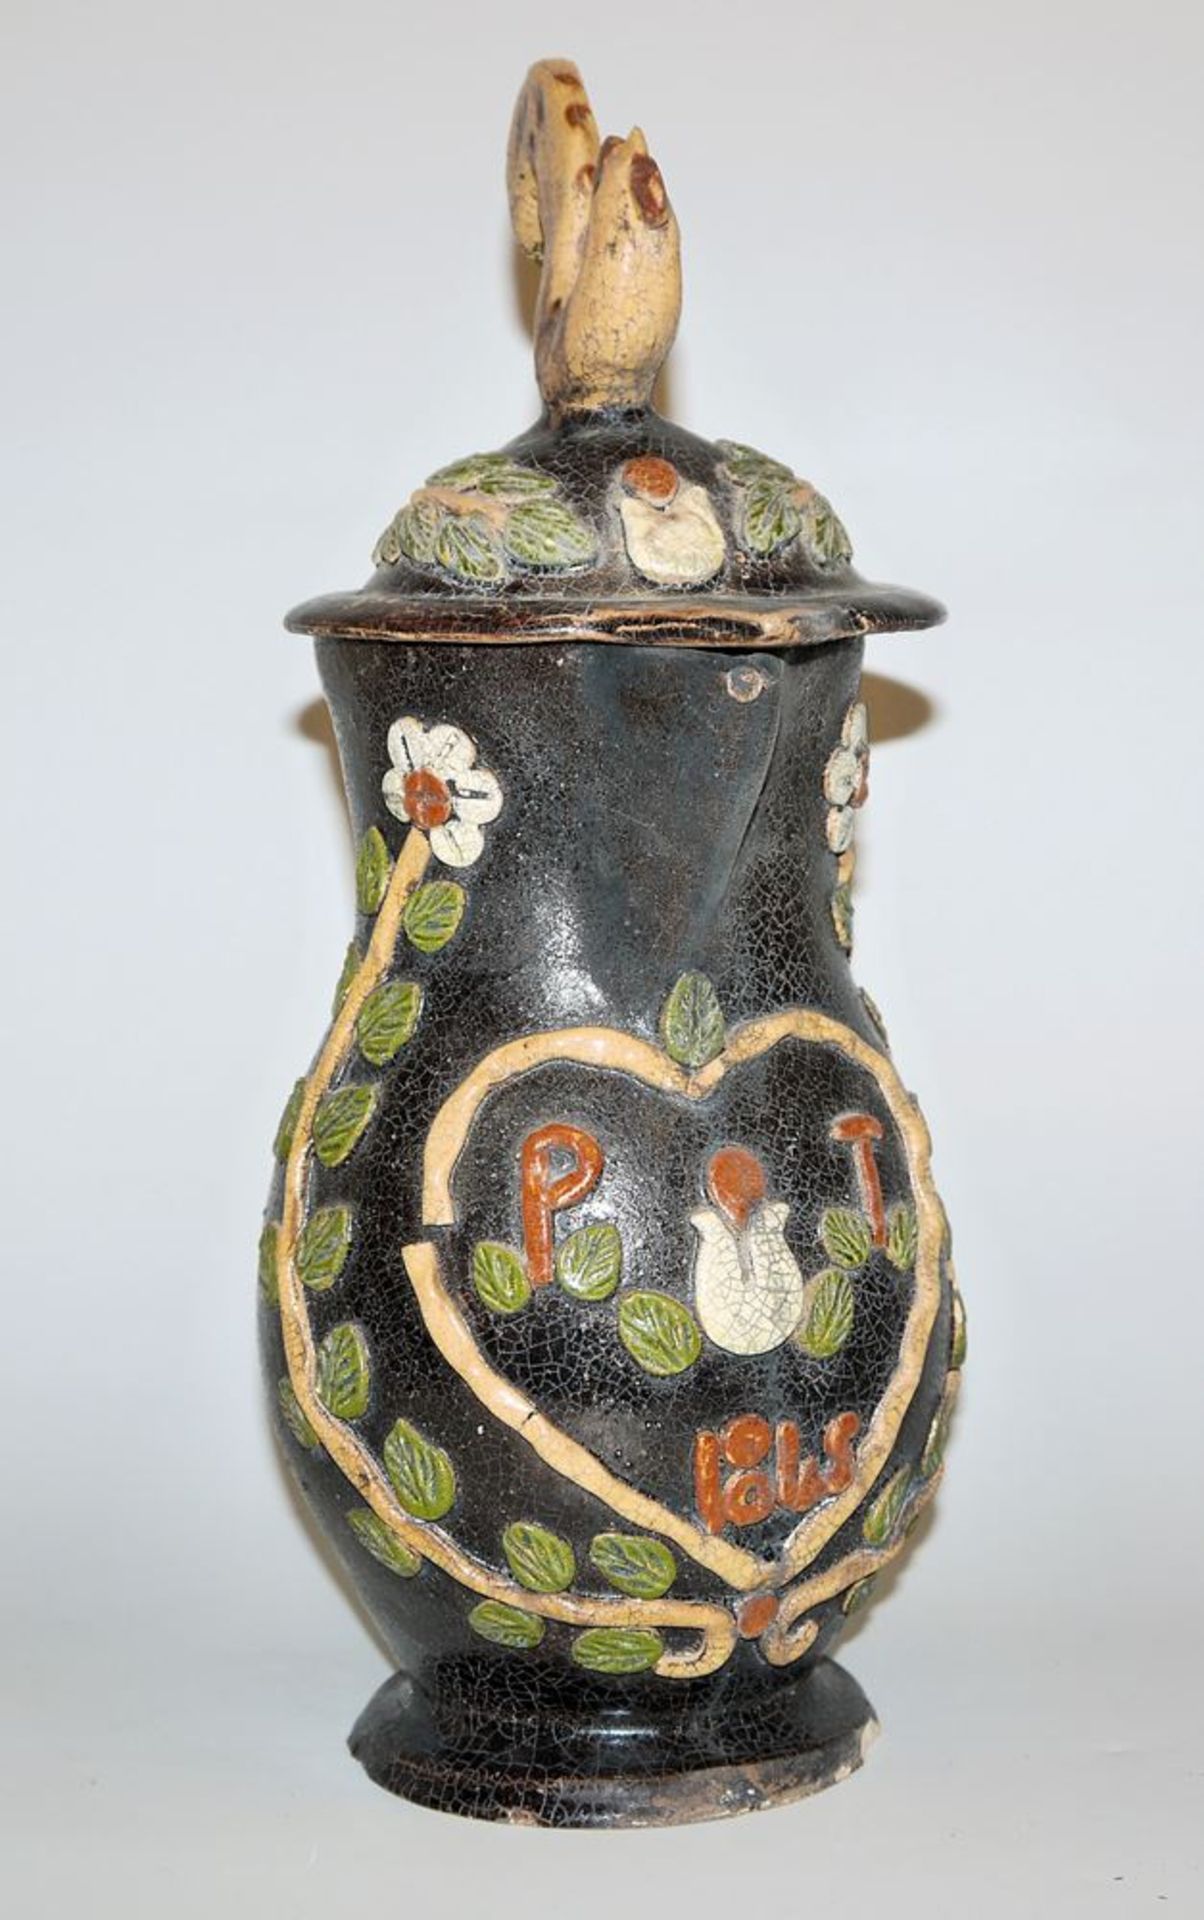 Soufflenheim bridal jug, Alsace 19th century